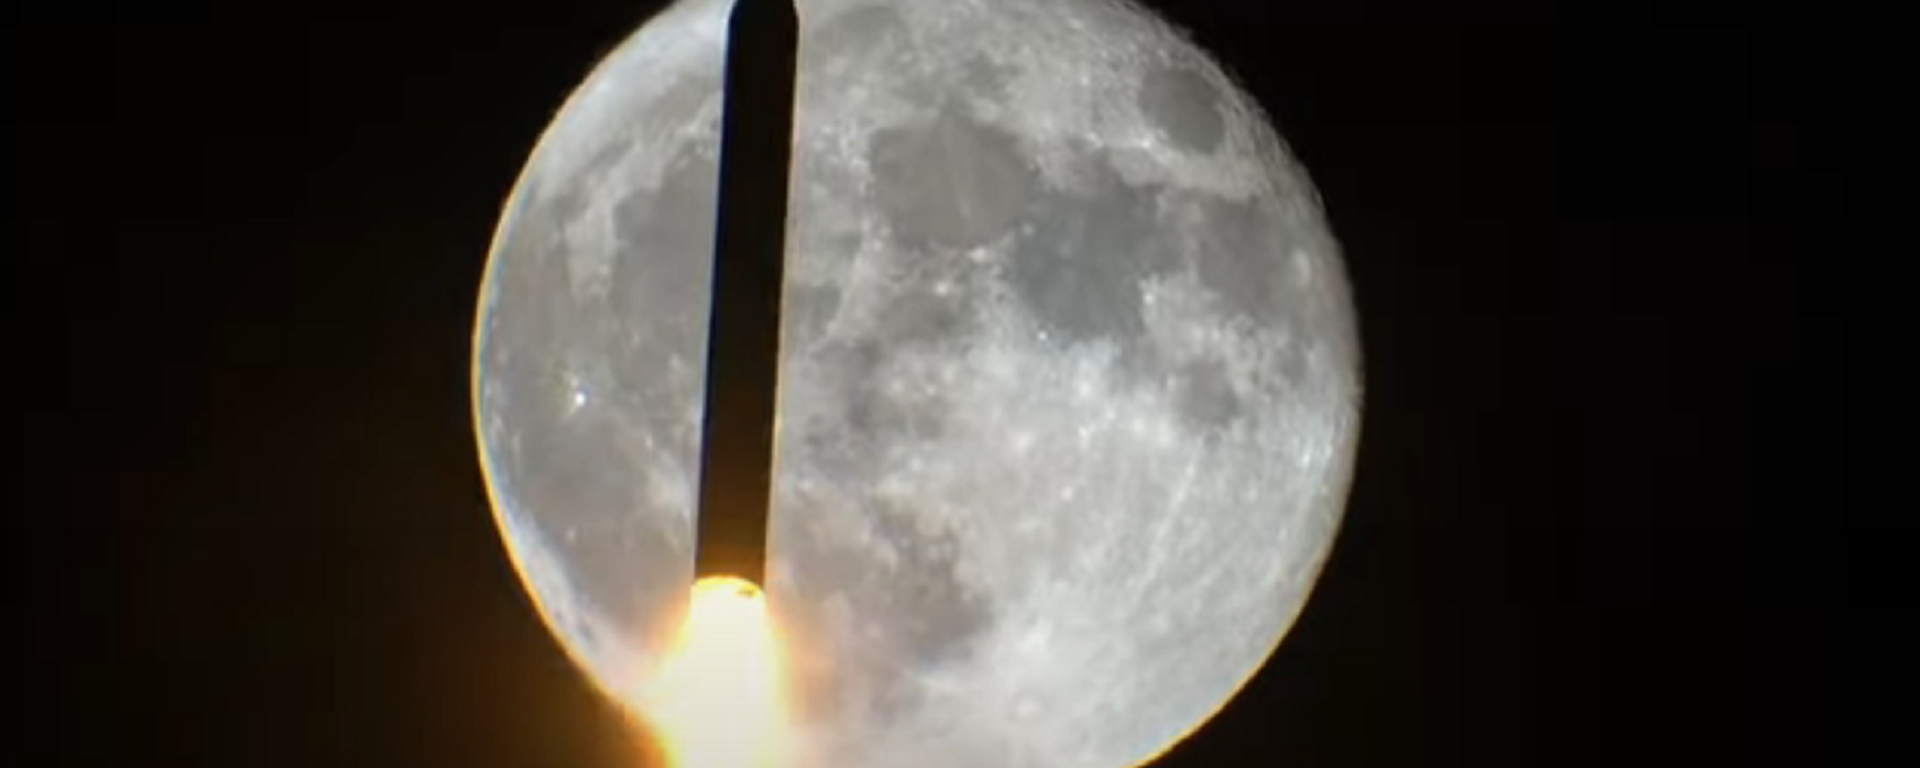 Un cohete pasa por delante de la luna - Sputnik Mundo, 1920, 19.02.2021